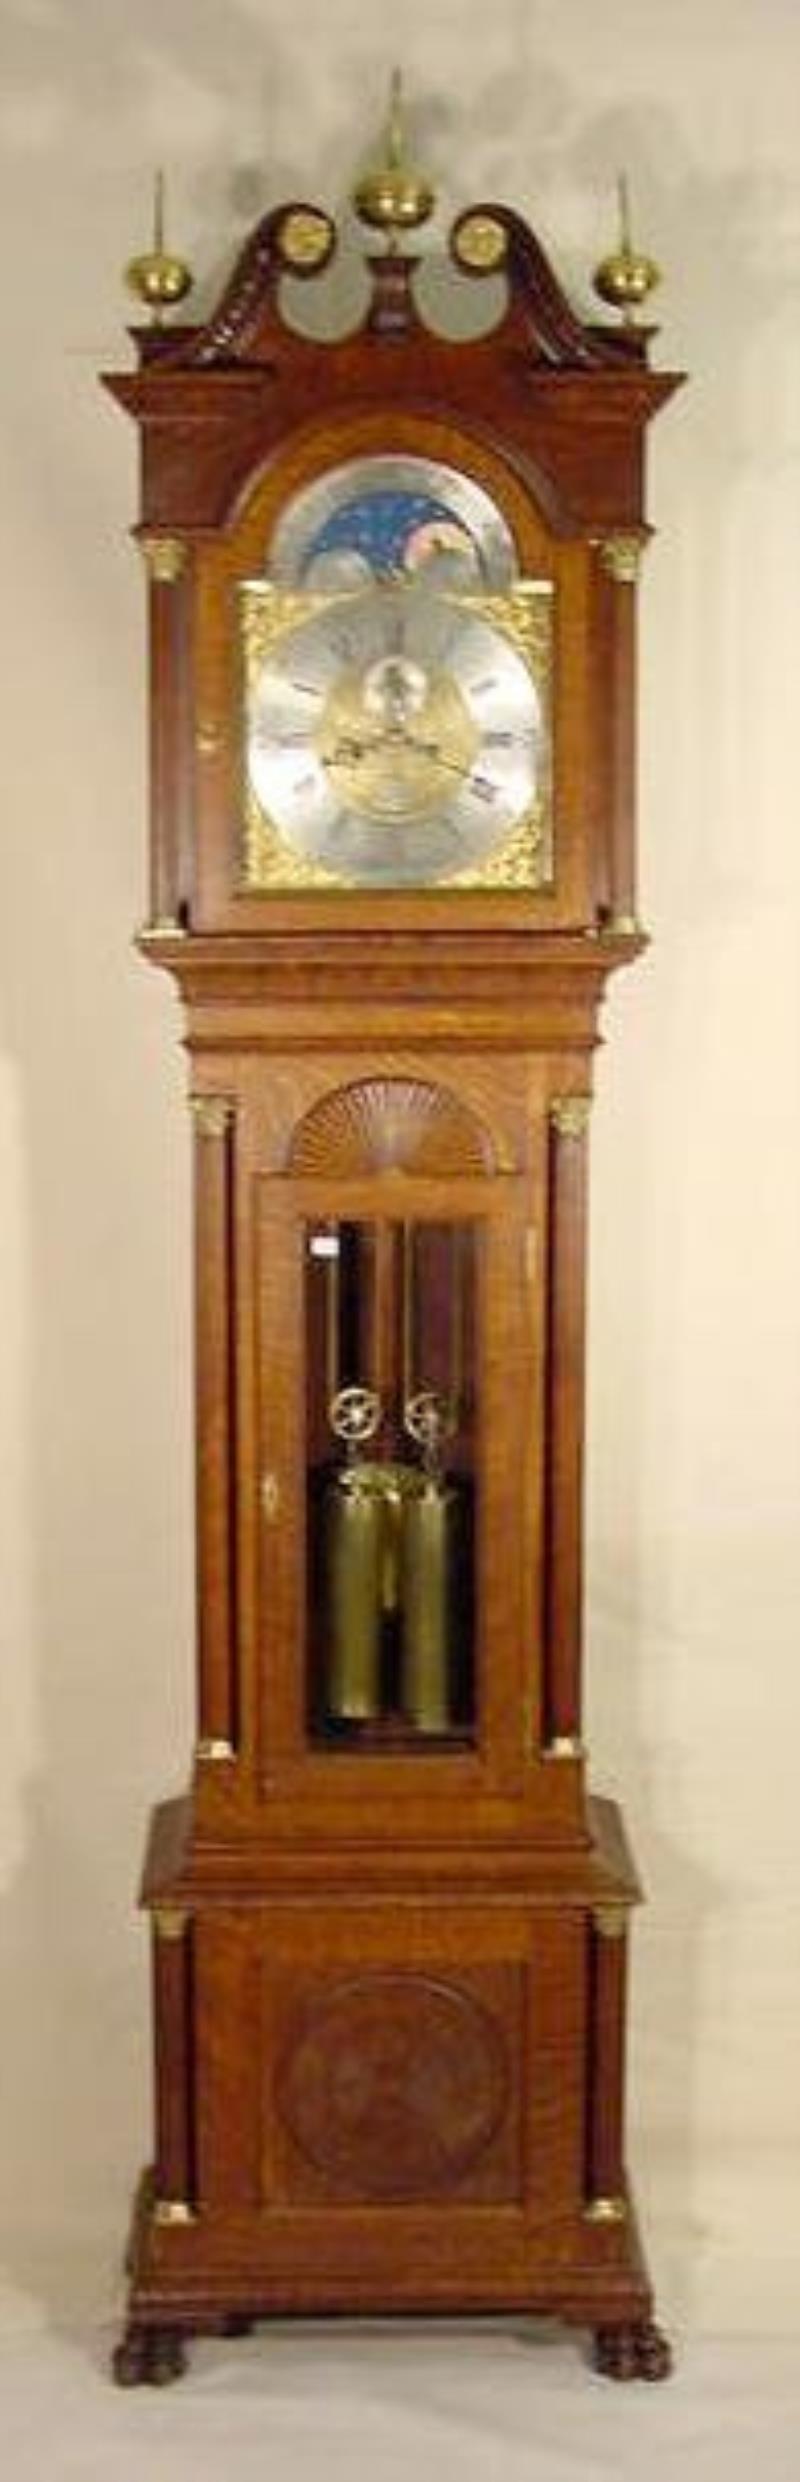 Oak Theodore B. Starr Grandfather Clock